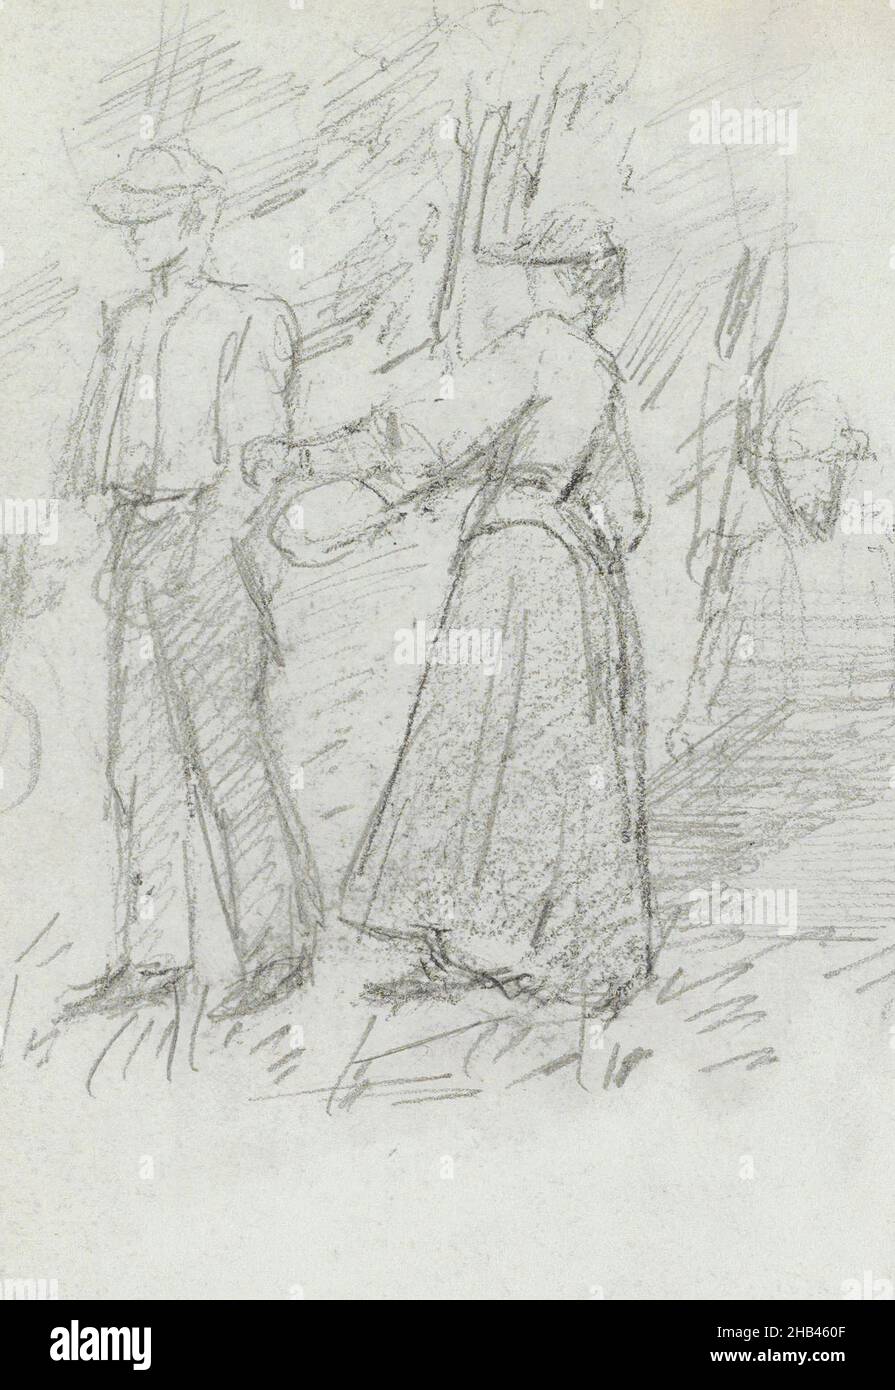 Foglio 7 recto da una copertina di un libro di schizzo con 7 fogli sciolti, uomo e due donne su un percorso con alberi, Jozef Israëls, 1834 - 1911 Foto Stock